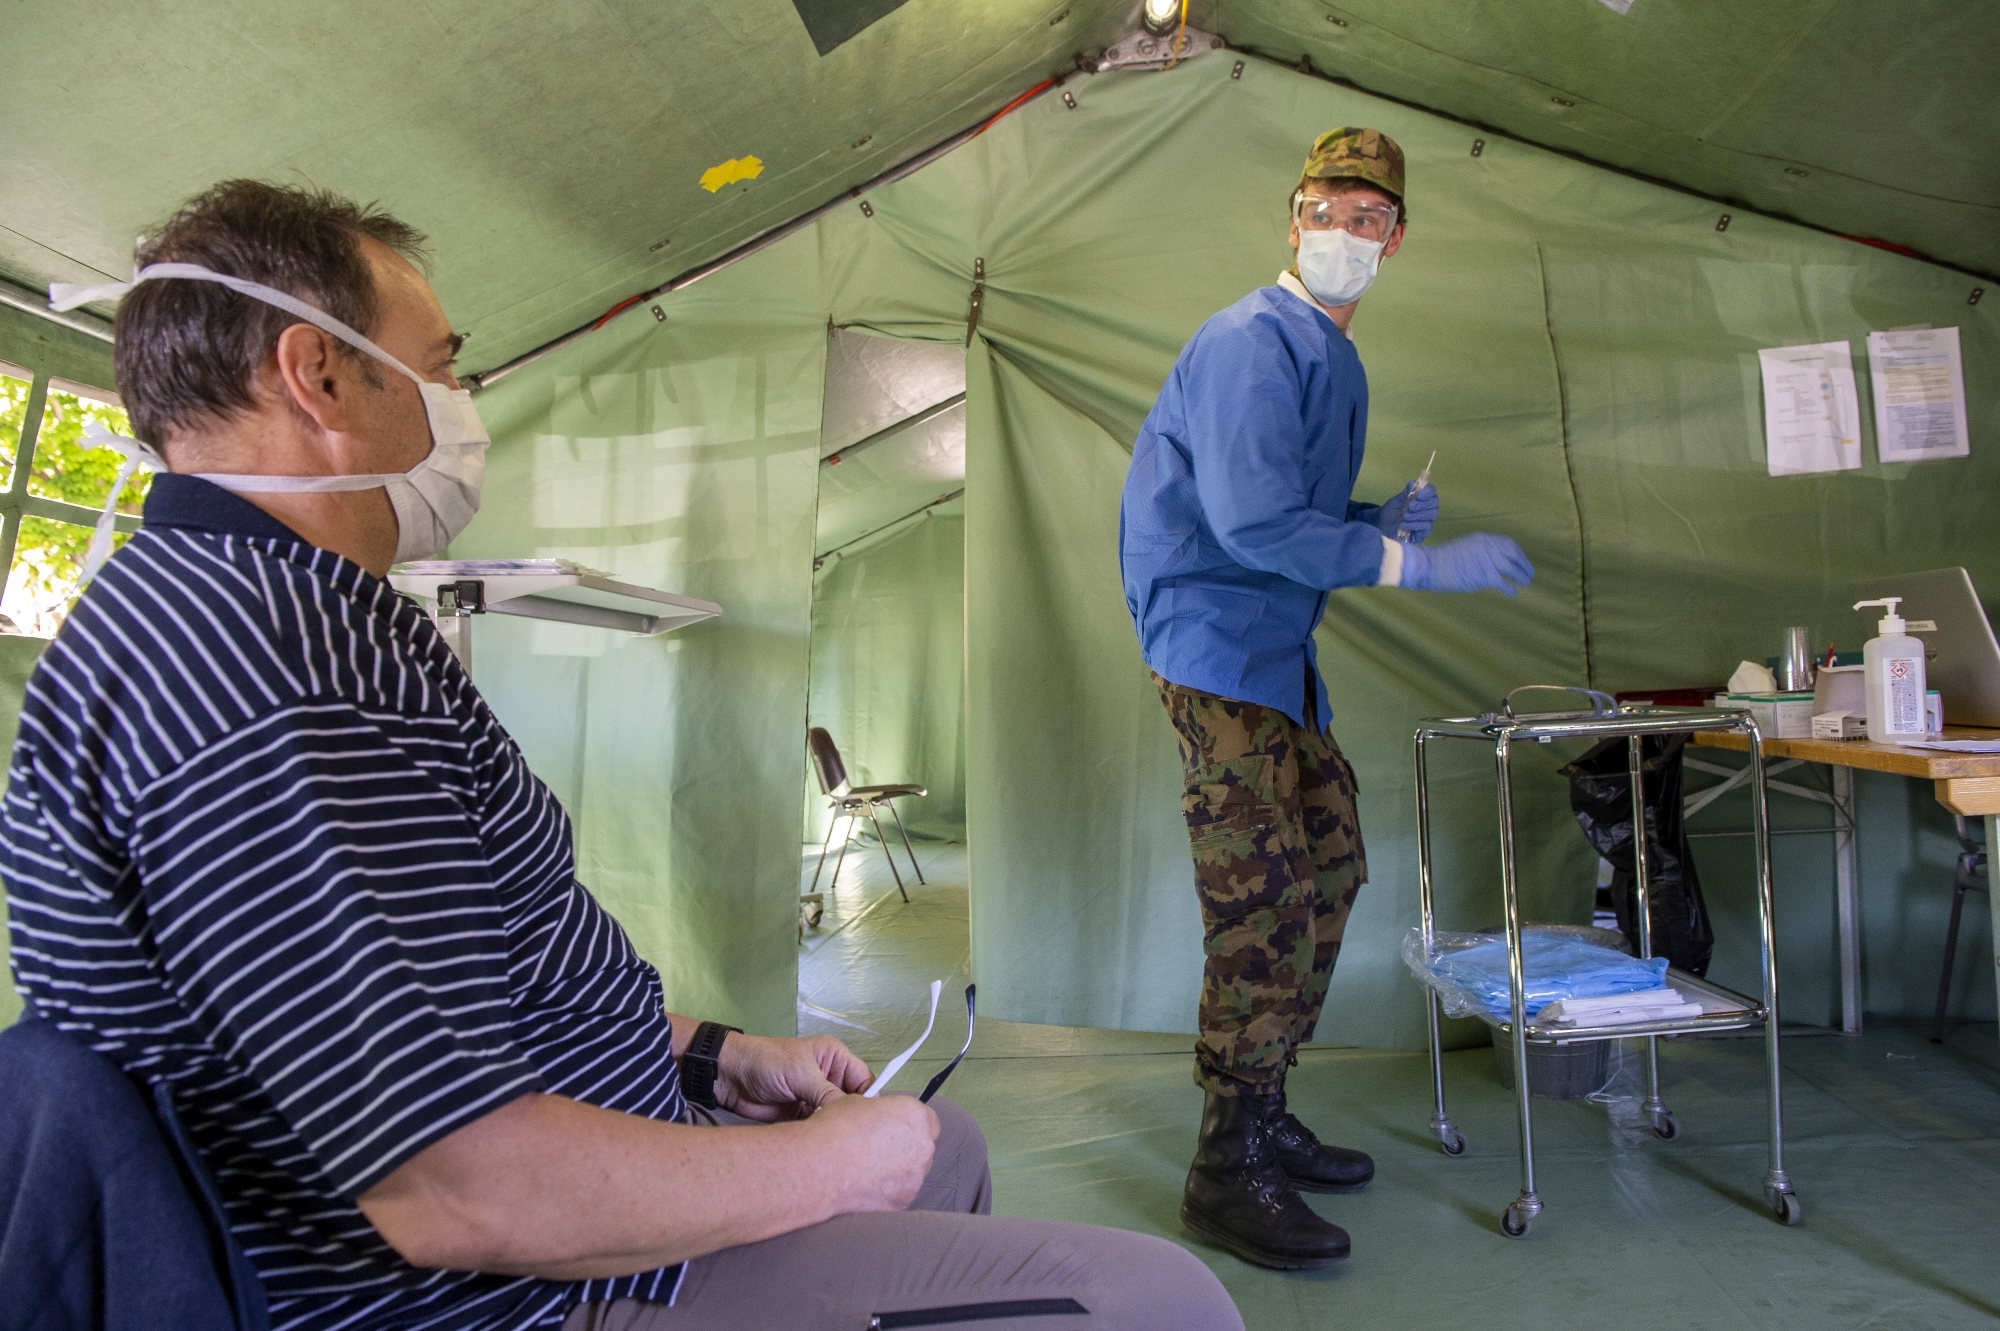 Les soldats sanitaires mobilisés dans le poste médical avancé de l'hôpital de Sion ont pour mission de trier tous les patients afin de décharger le service des urgences.